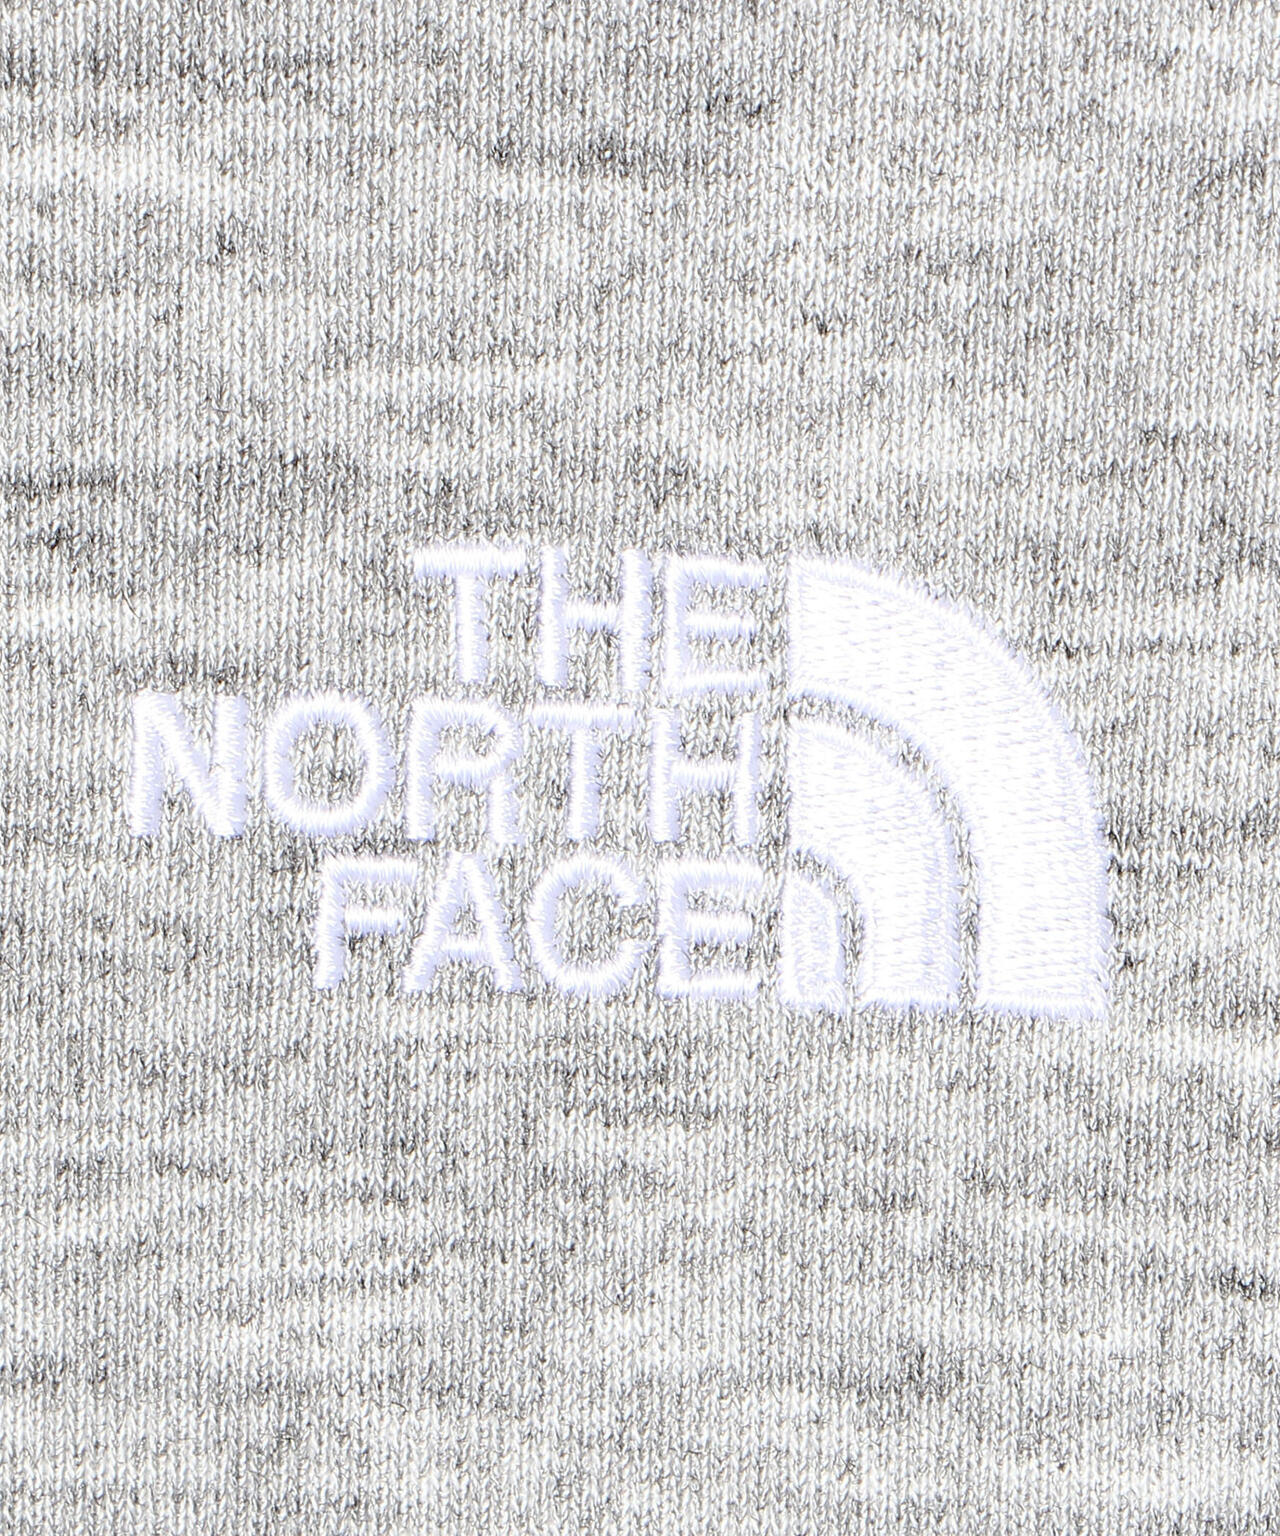 THE NORTH FACE/ザ・ノースフェイス/Square Logo Hoodie/スクエアロゴパーカー